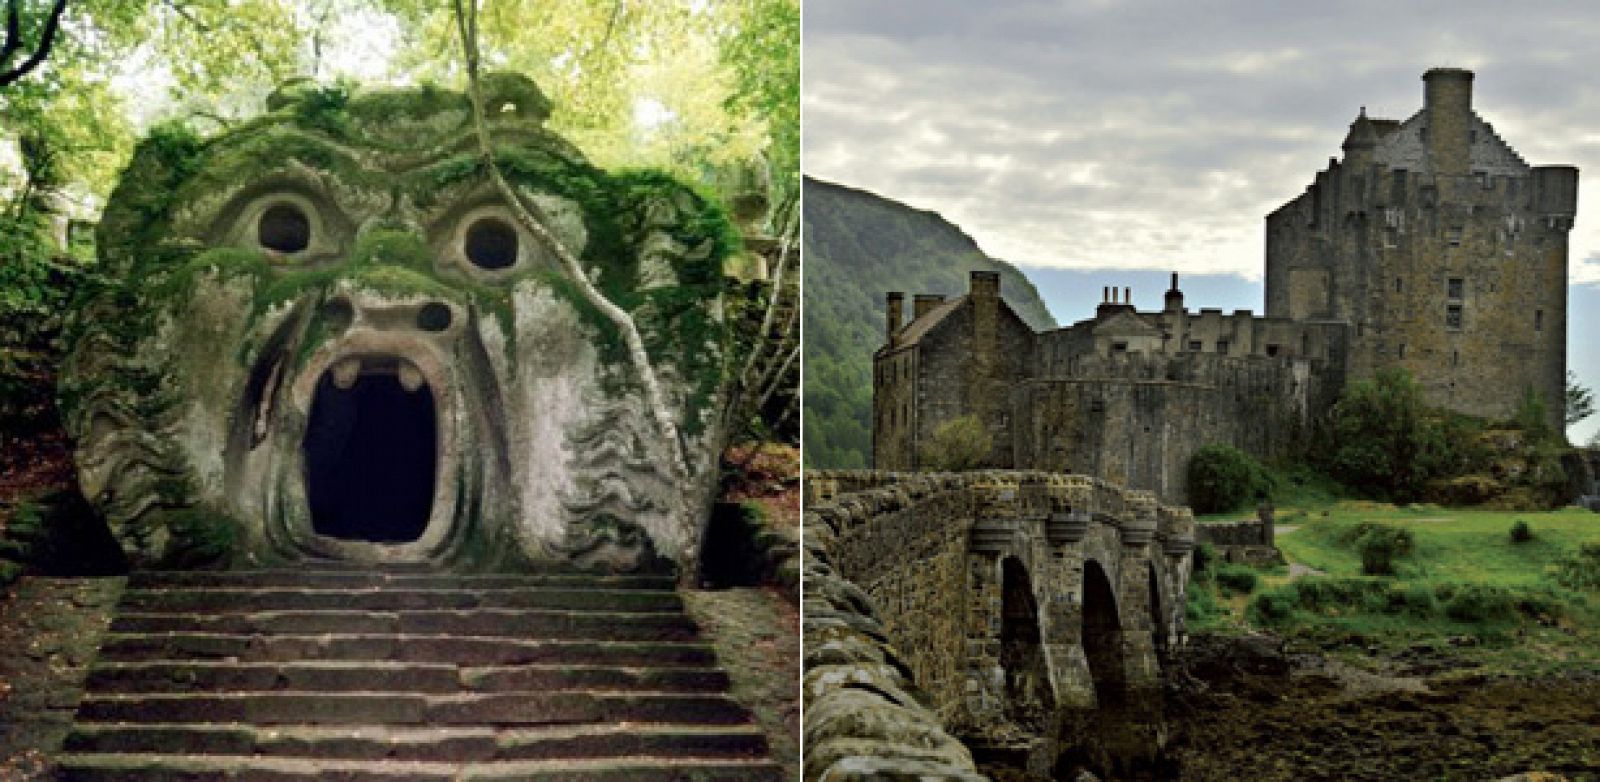 Dos lugares encantados: Bomarzo, el jardín de los monstruos y el Eilean Donan Castle, en Escocia